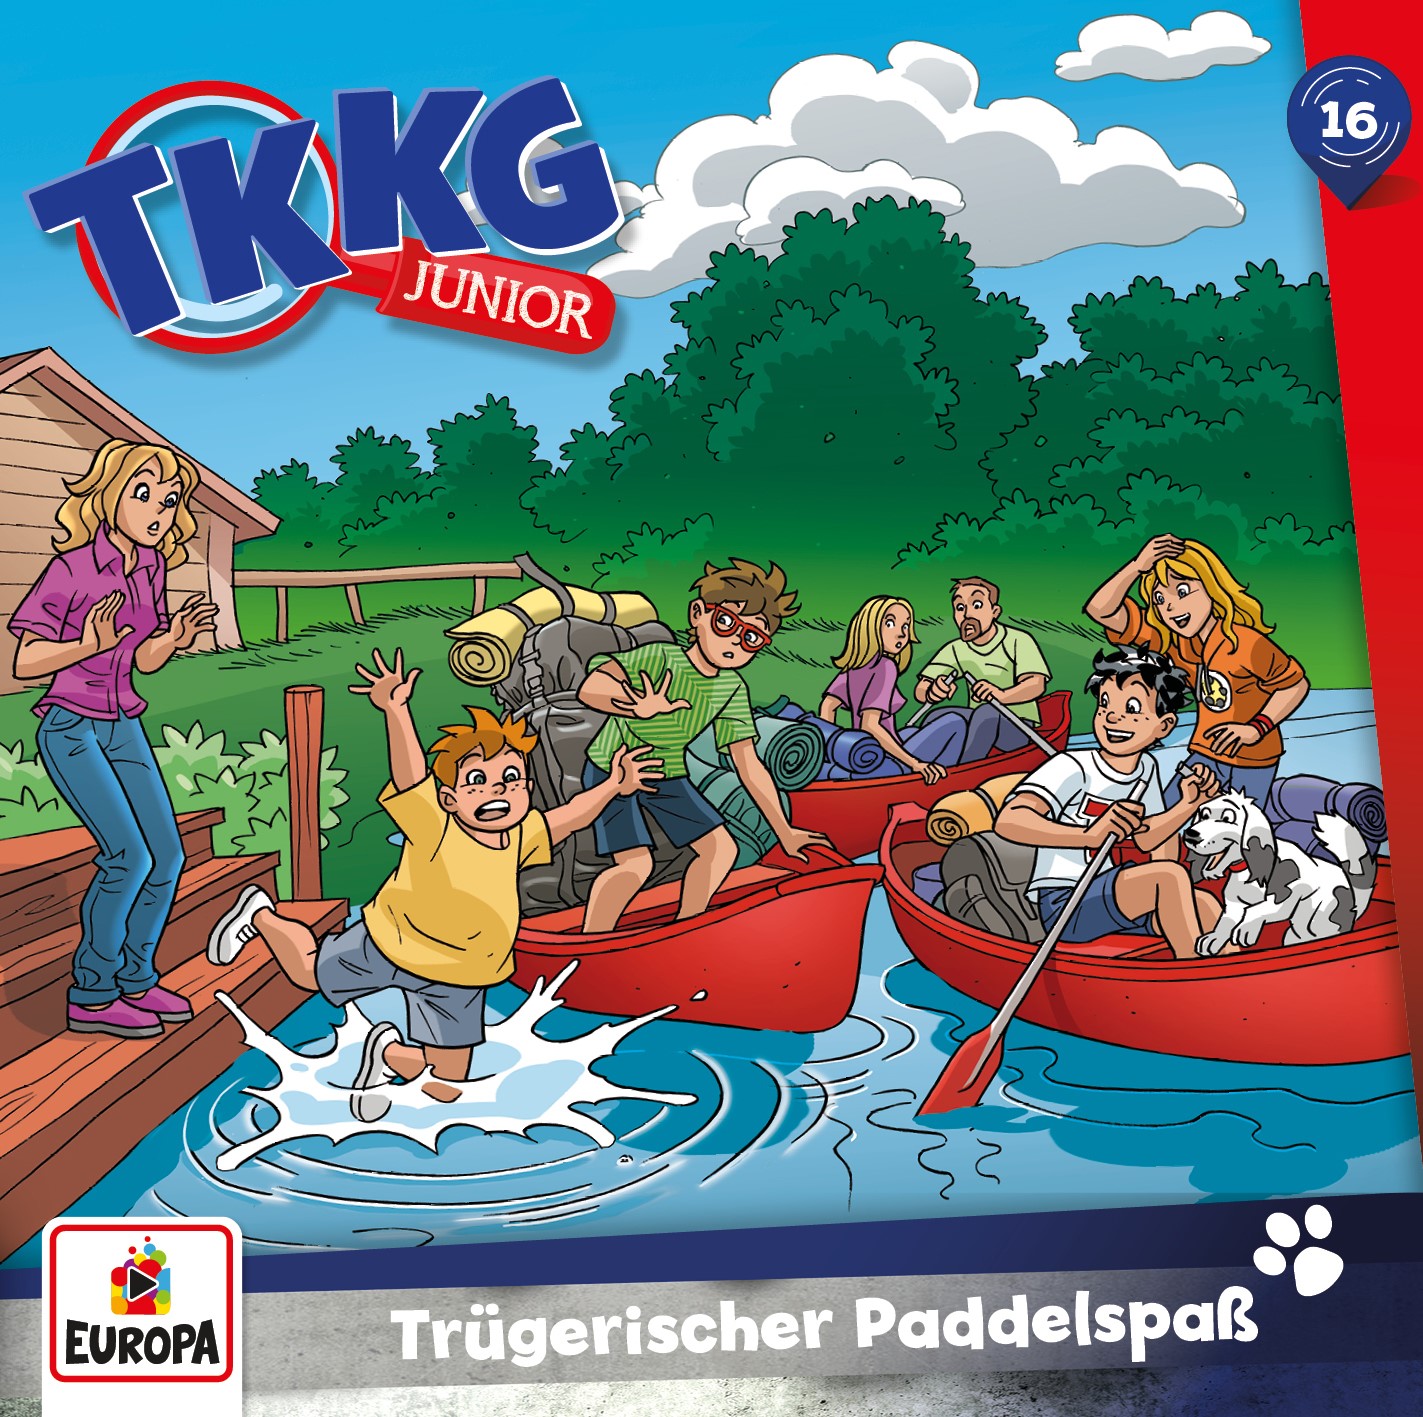 TKKG Junior - Trügerischer Paddelspaß 